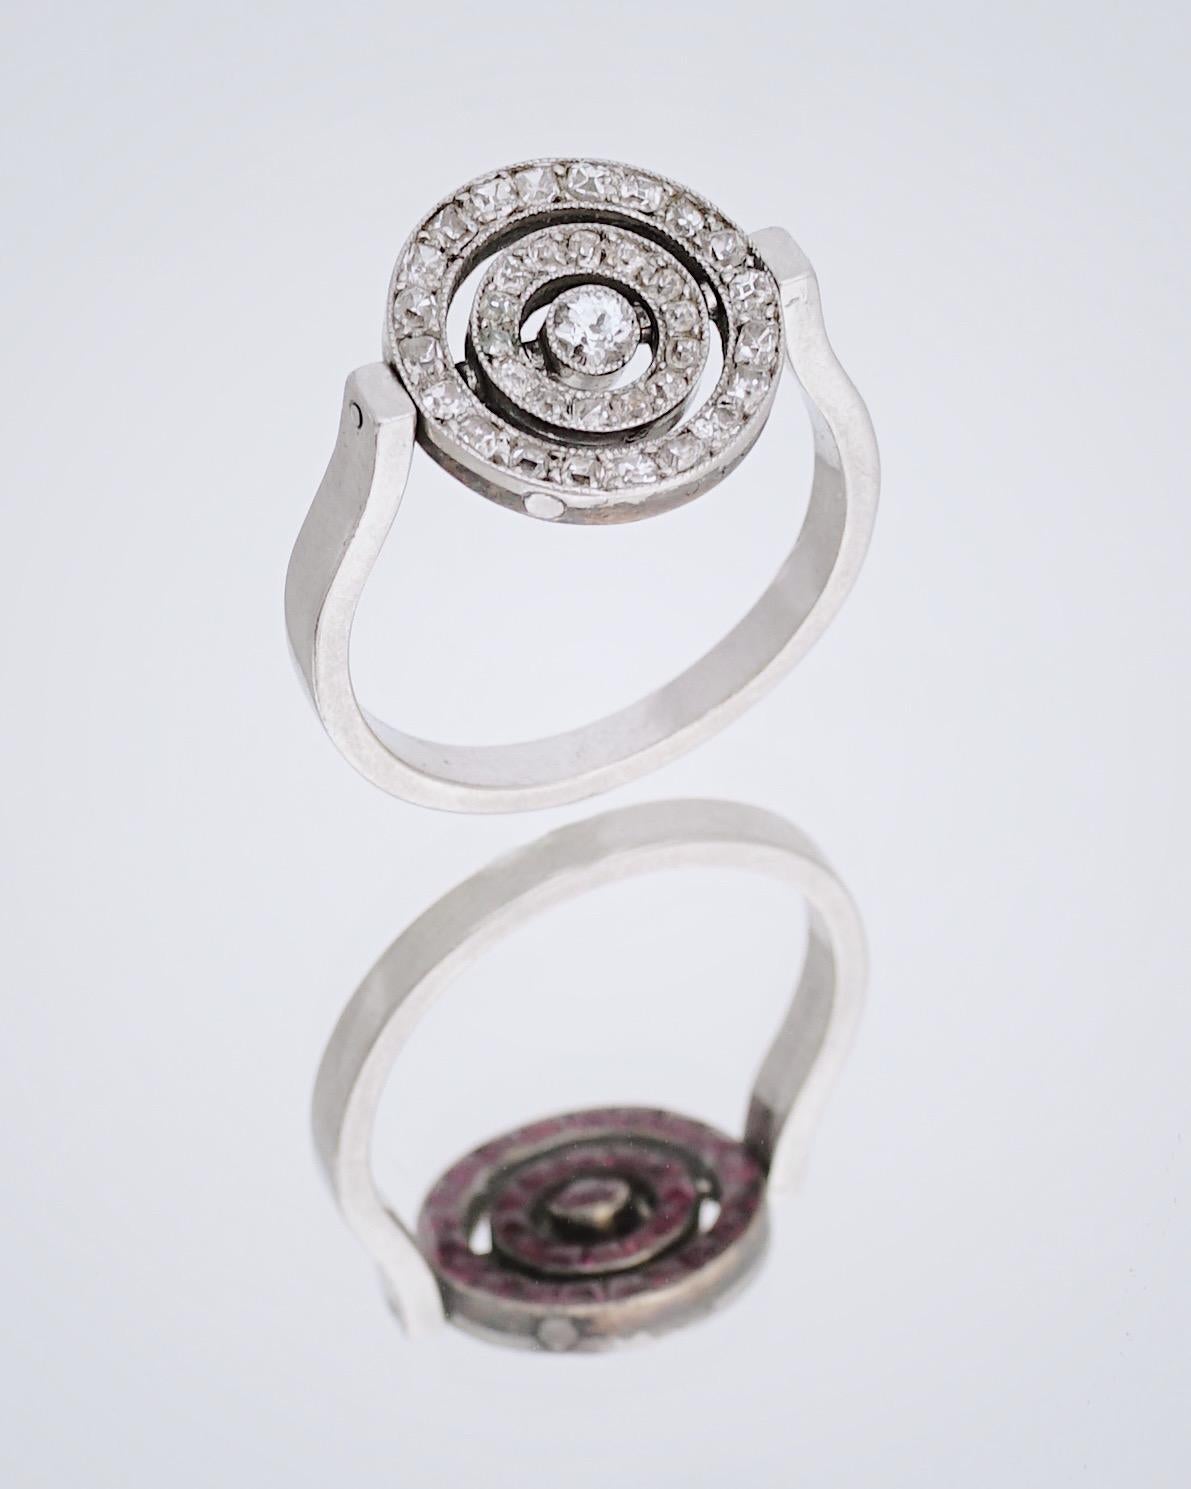 Cartier, Paris
Diamant- und Rubin-Drehring, um 1910

Dieser aus der Belle Epoque stammende Ring aus dem frühen 19. Jahrhundert (C.1910) ist auf der einen Seite mit Rubinen und auf der anderen Seite mit Diamanten im Minenschliff besetzt, die in drei